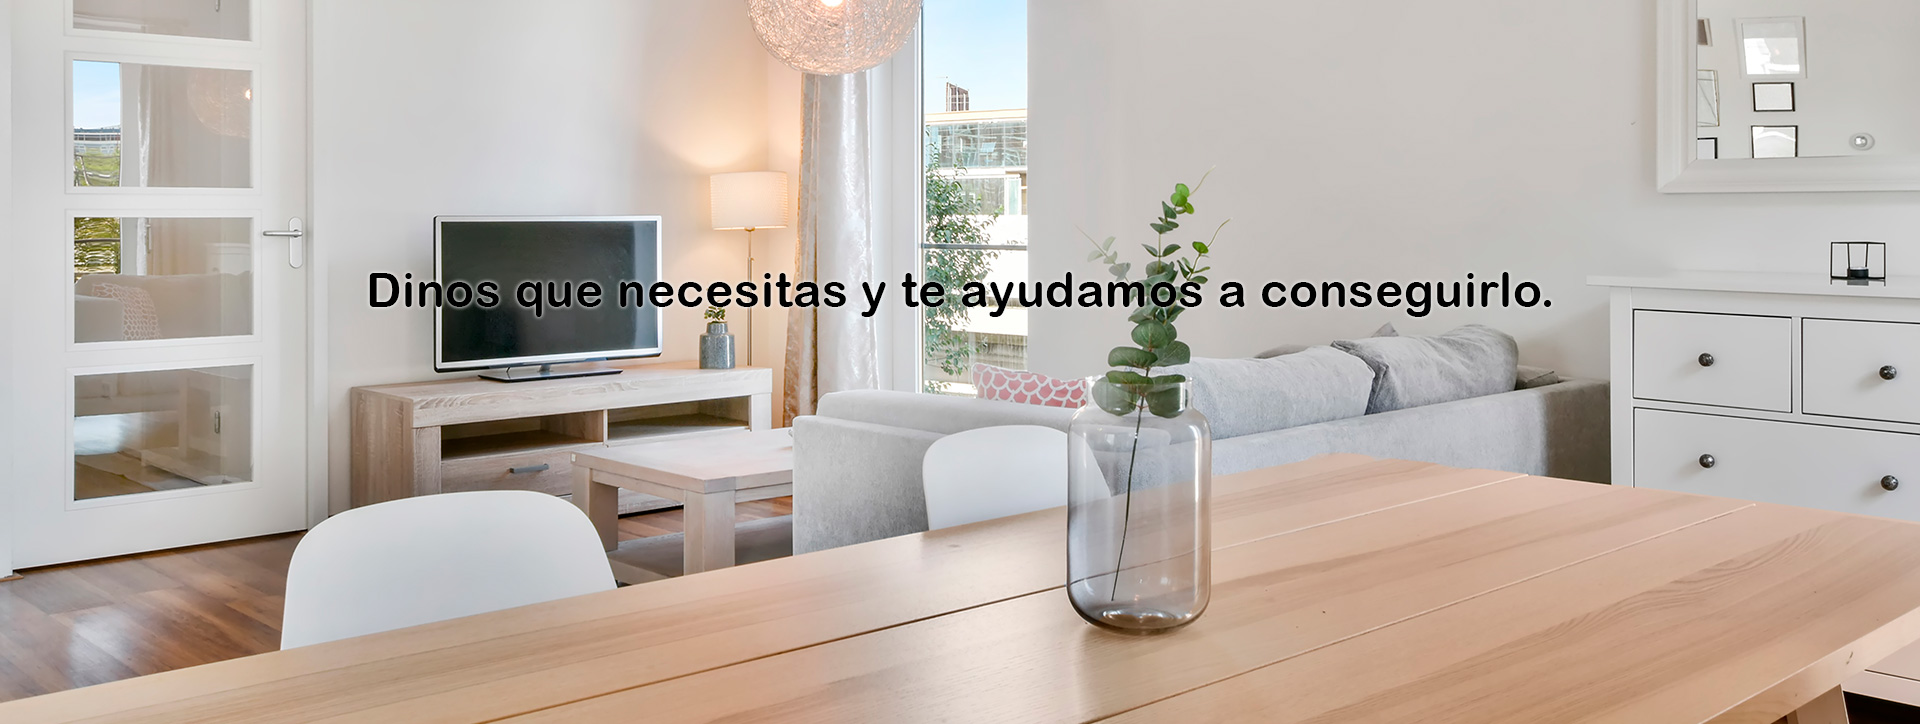 En inmobiliaria Apiastorga, Nos dedicamos a la venta casas y pisos en Reus, Costa Dorada, contando en nuestra plantilla con grandes profesionales siempre a disposición del cliente.